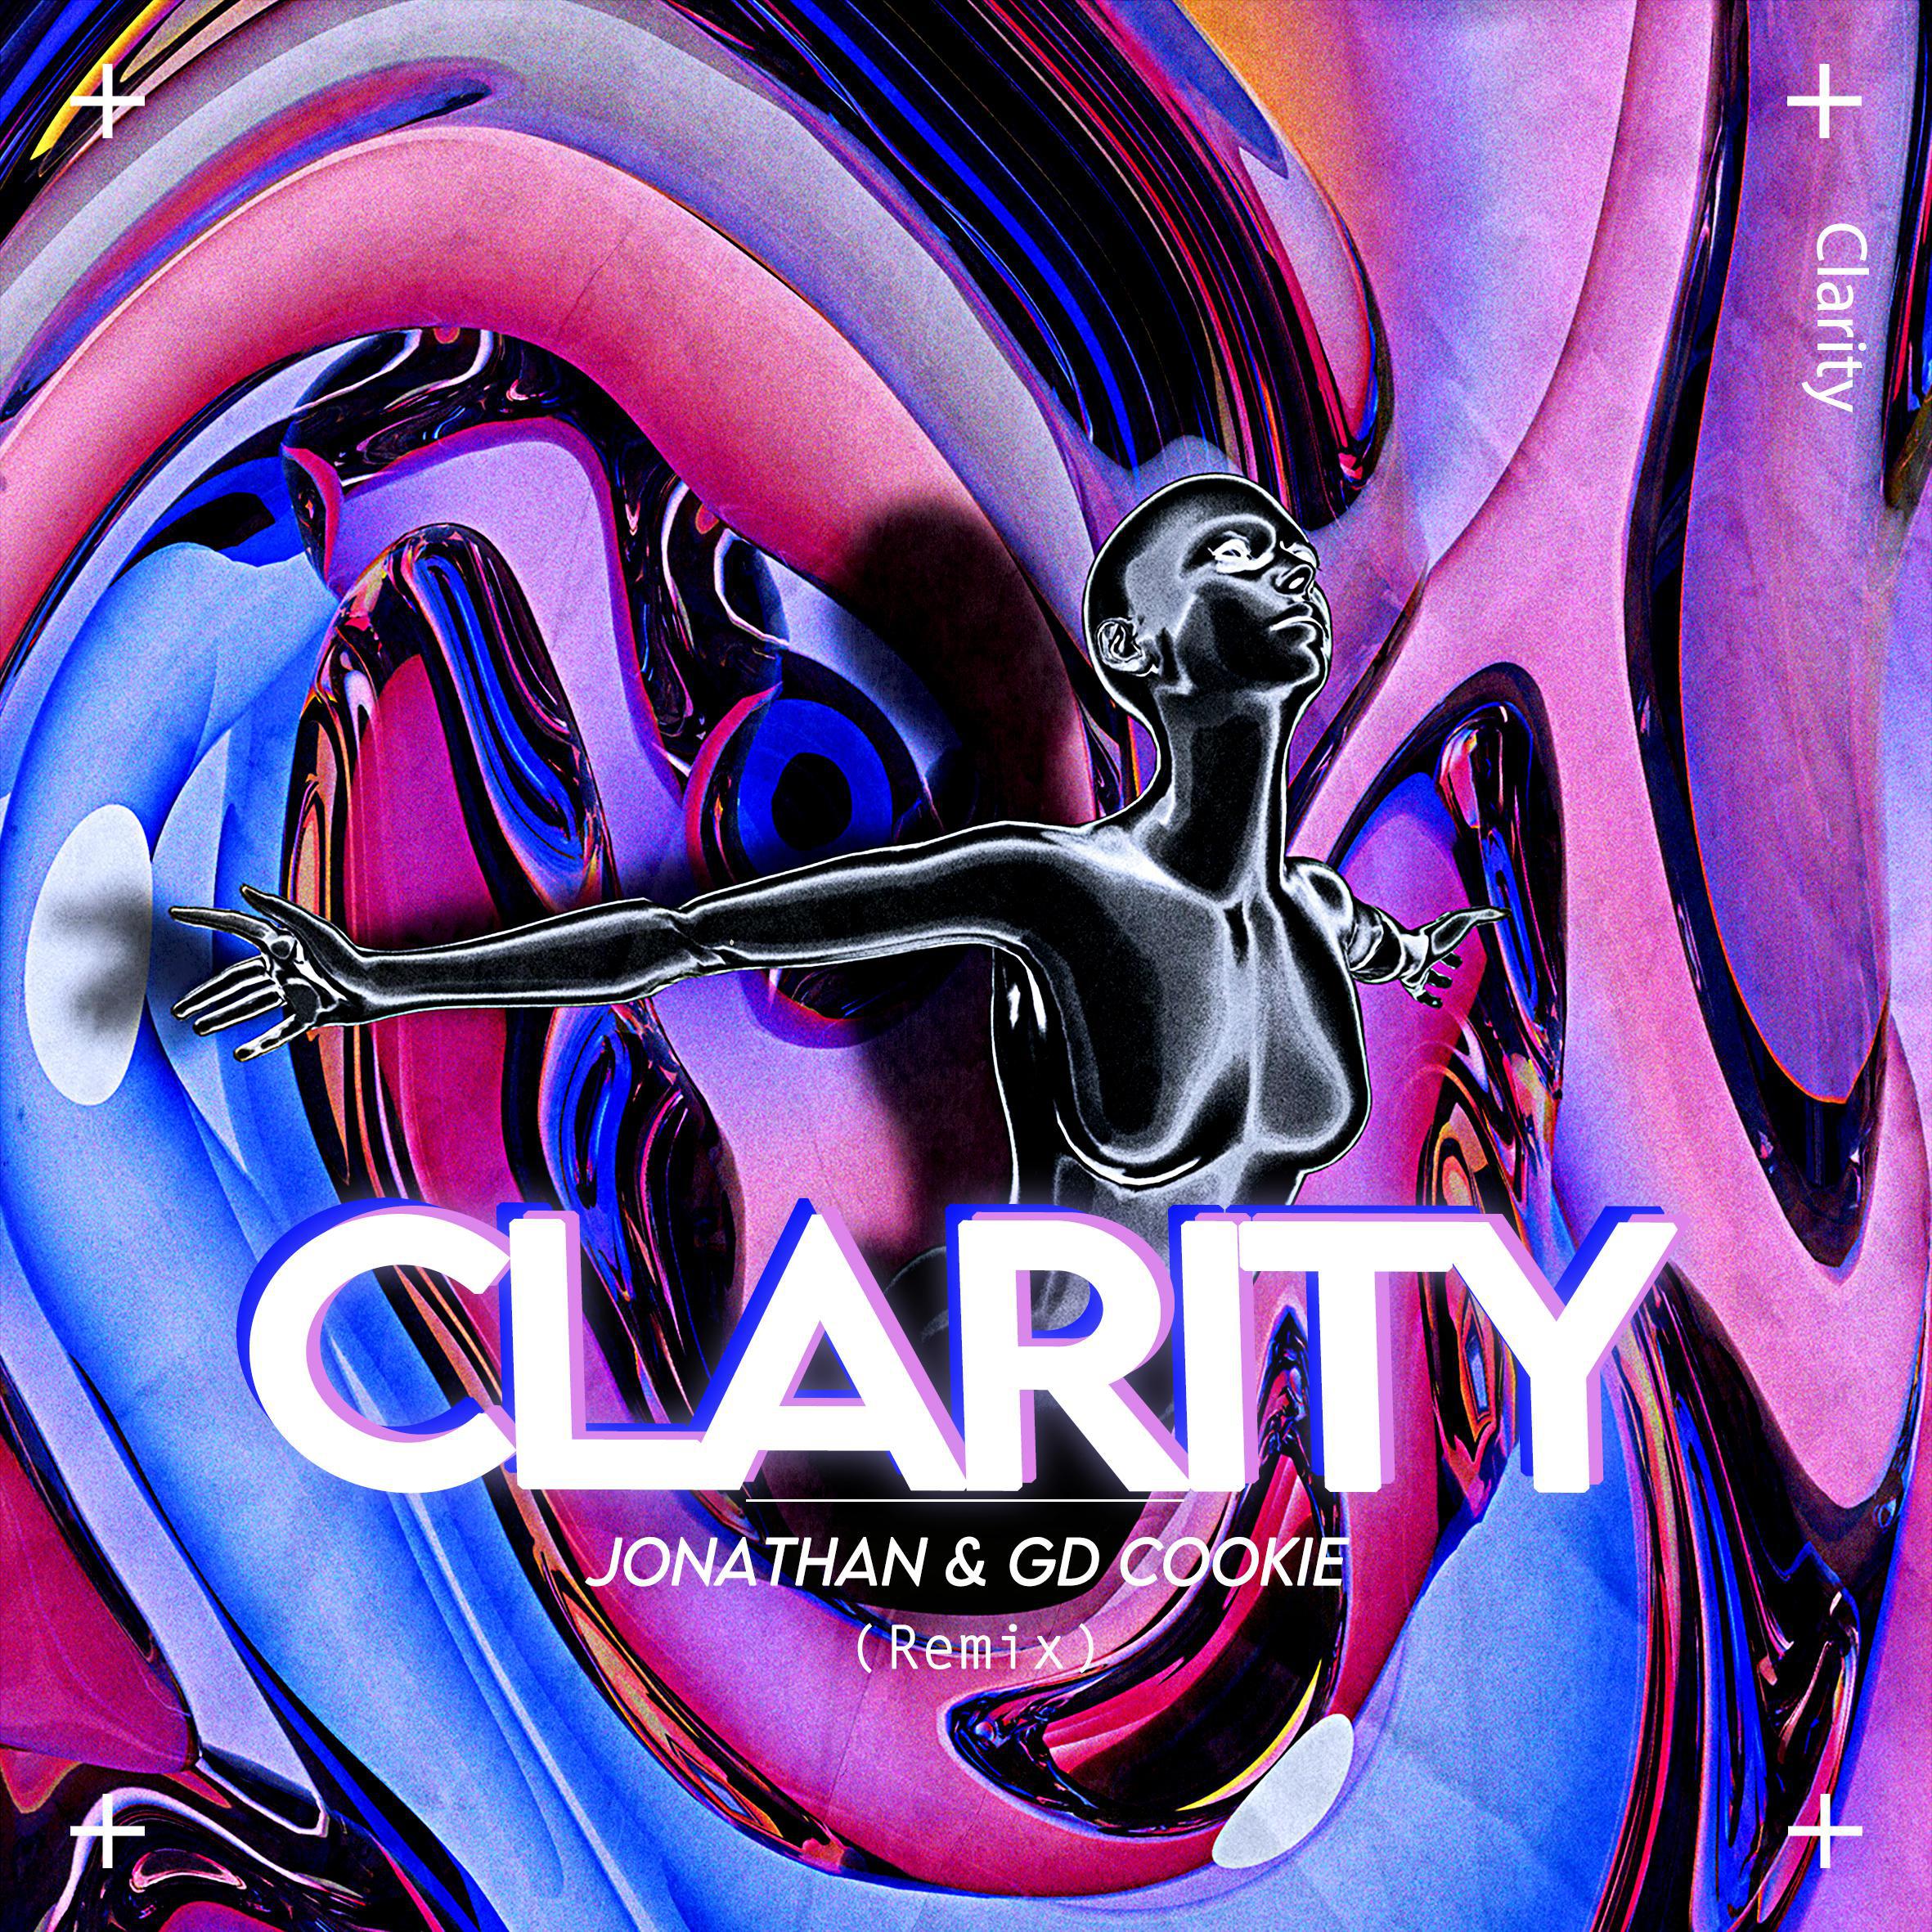 DJJonathan - Zedd-Clarity（DJJonathan / GD Cookie remix）